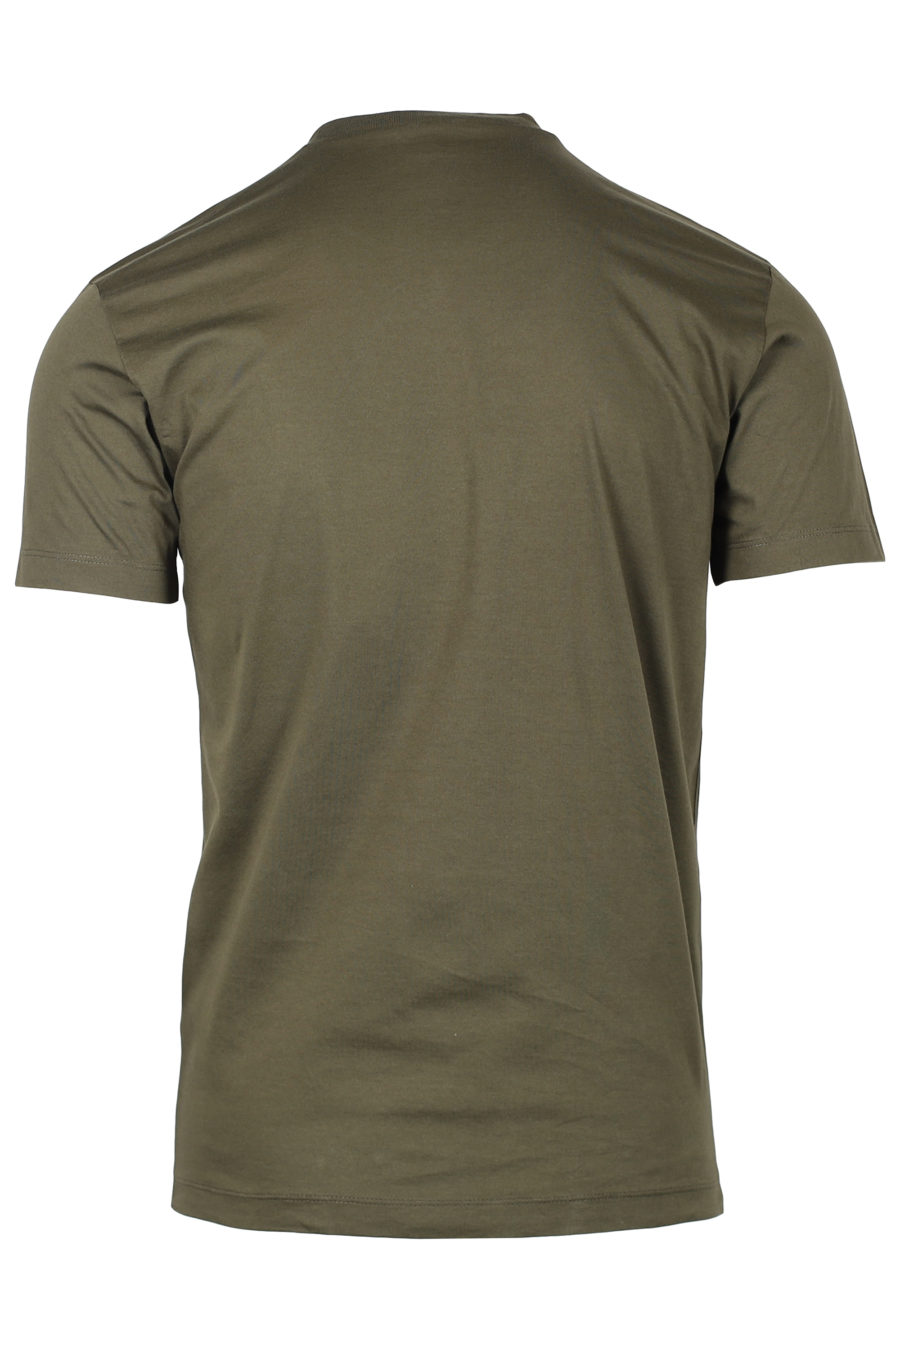 Camiseta verde militar con logo de la marca spray - IMG 2372